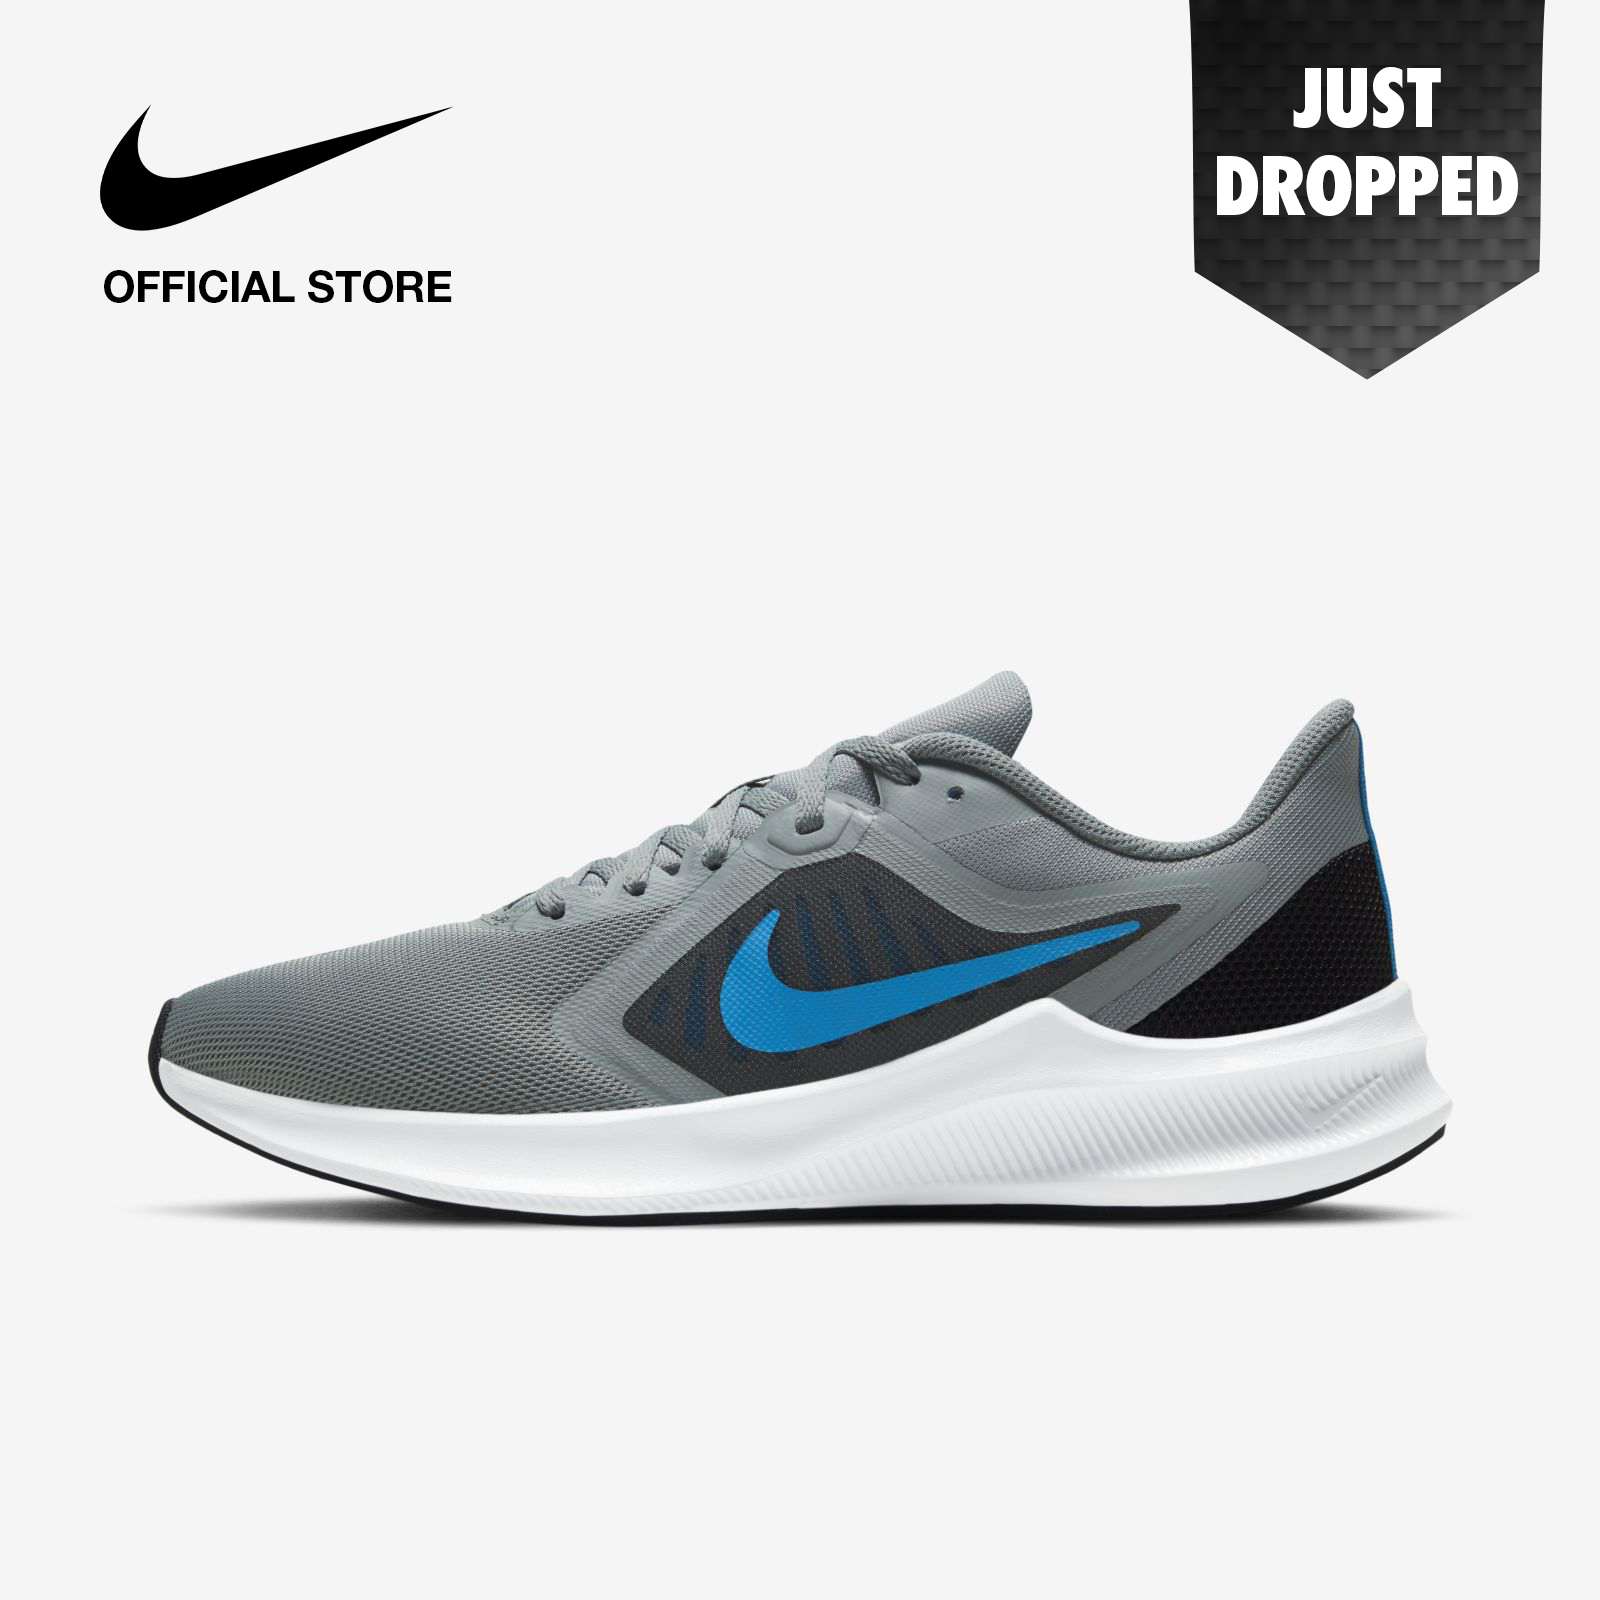 Nike Men's Downshifter 10 Running Shoes - Particle Grey ไนกี้ รองเท้าวิ่งผู้ชาย ดาวน์ชิฟเตอร์ 1 - สีเทา